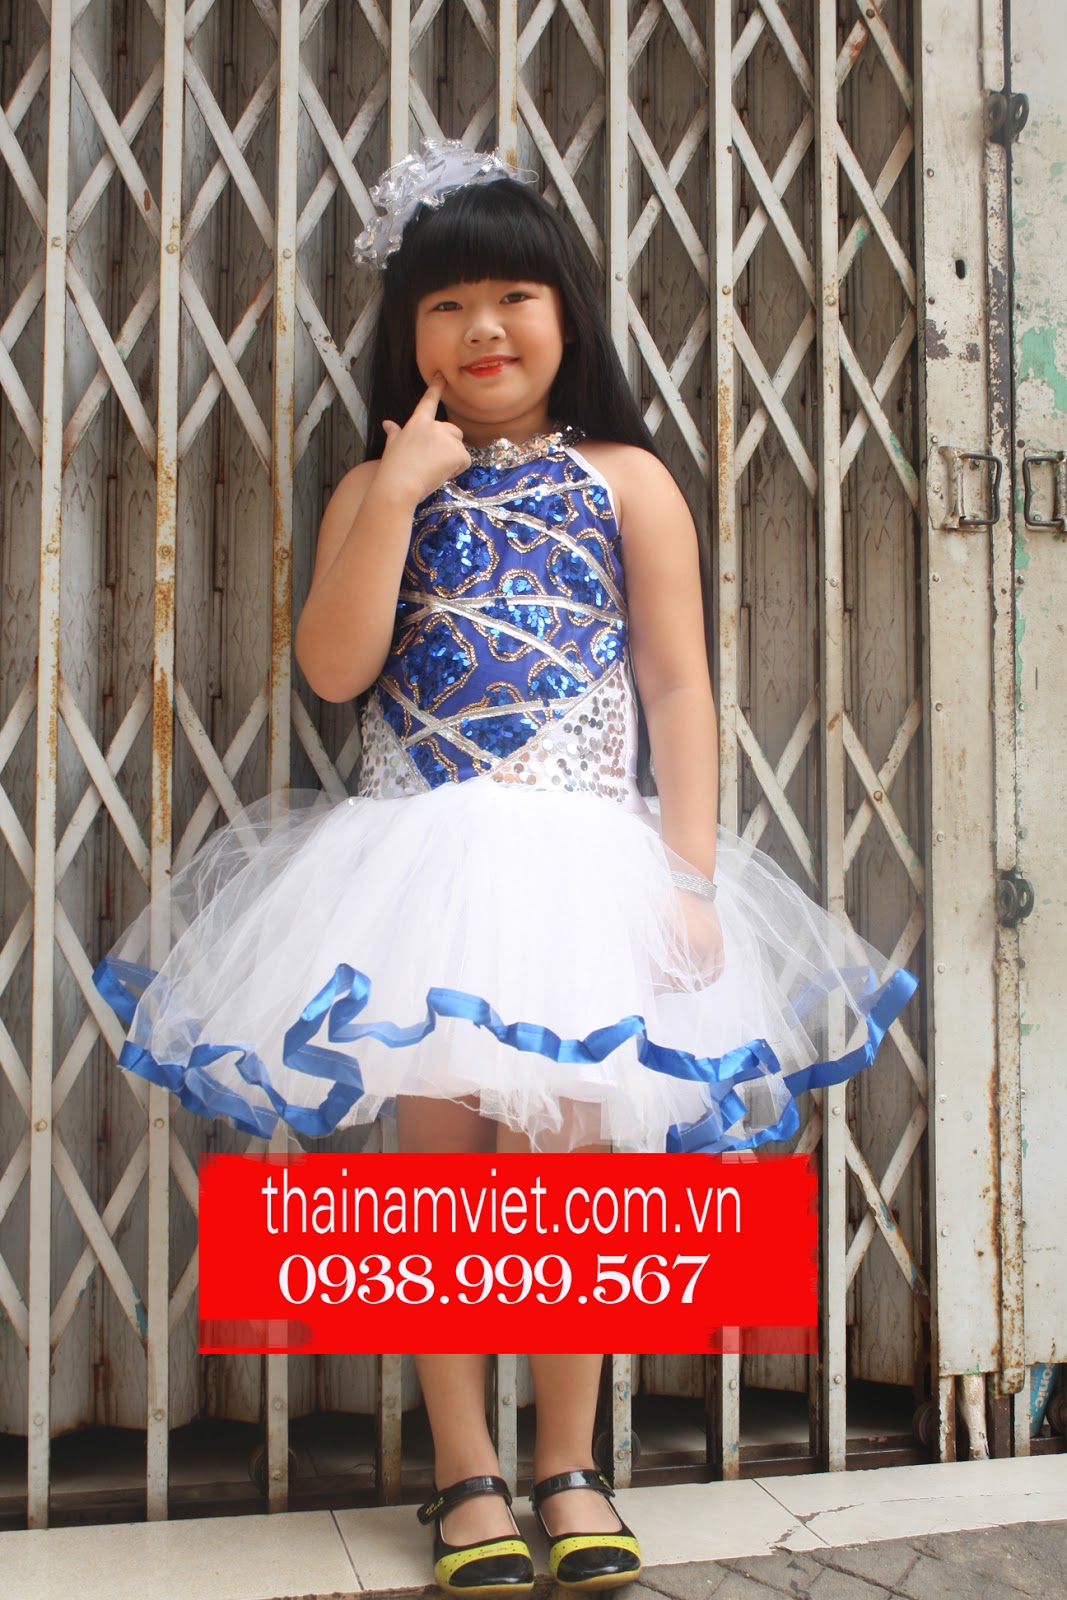 Chuyên may bán và cho thuê trang phục váy múa trẻ em giá mềm